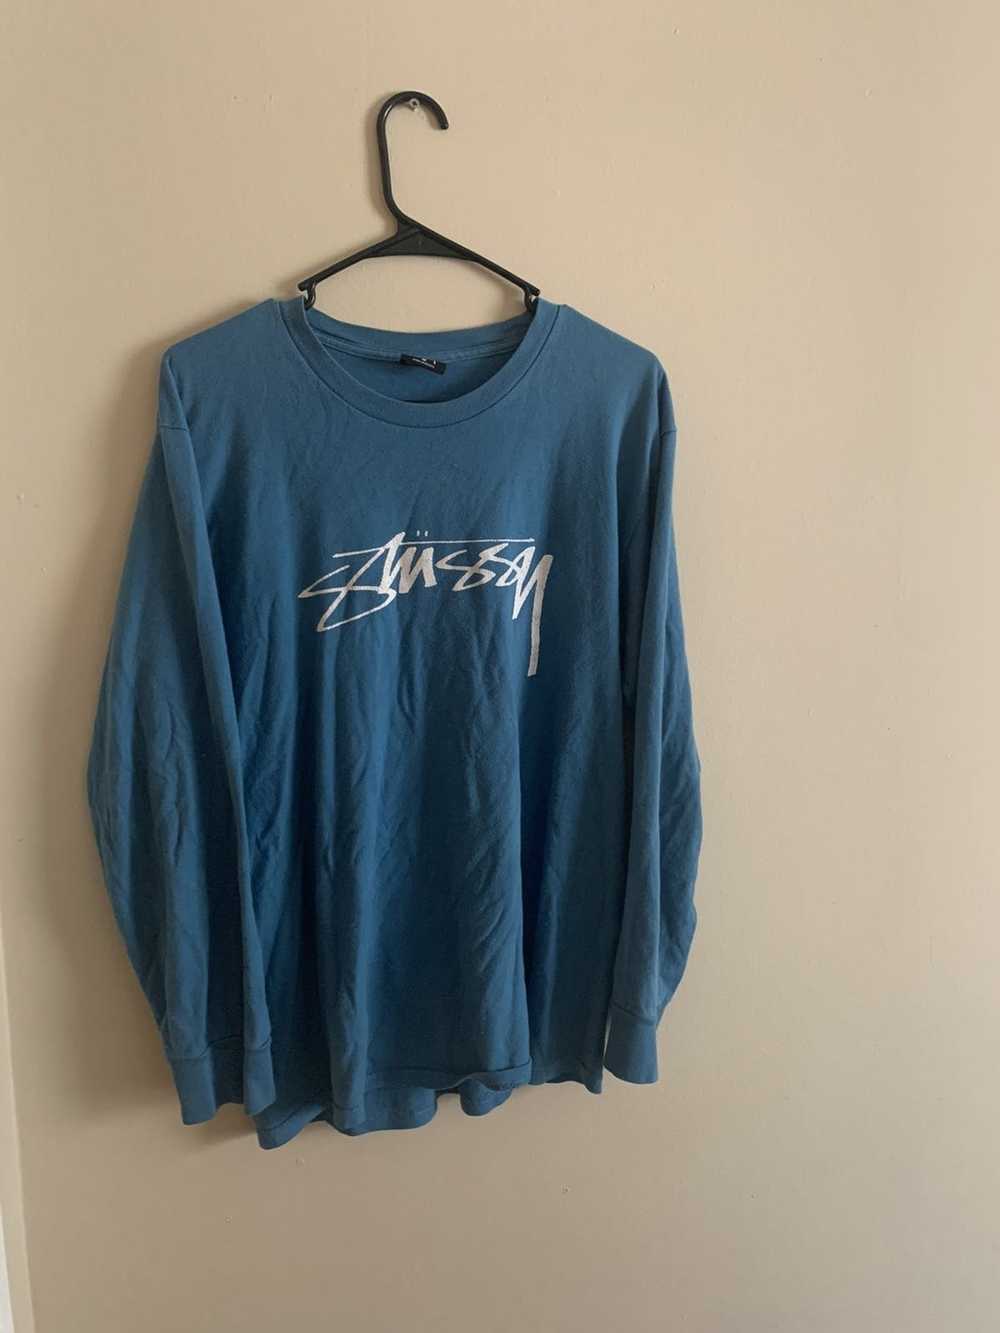 Stussy × Vintage Stussy LS Shirt Turquoise - image 1